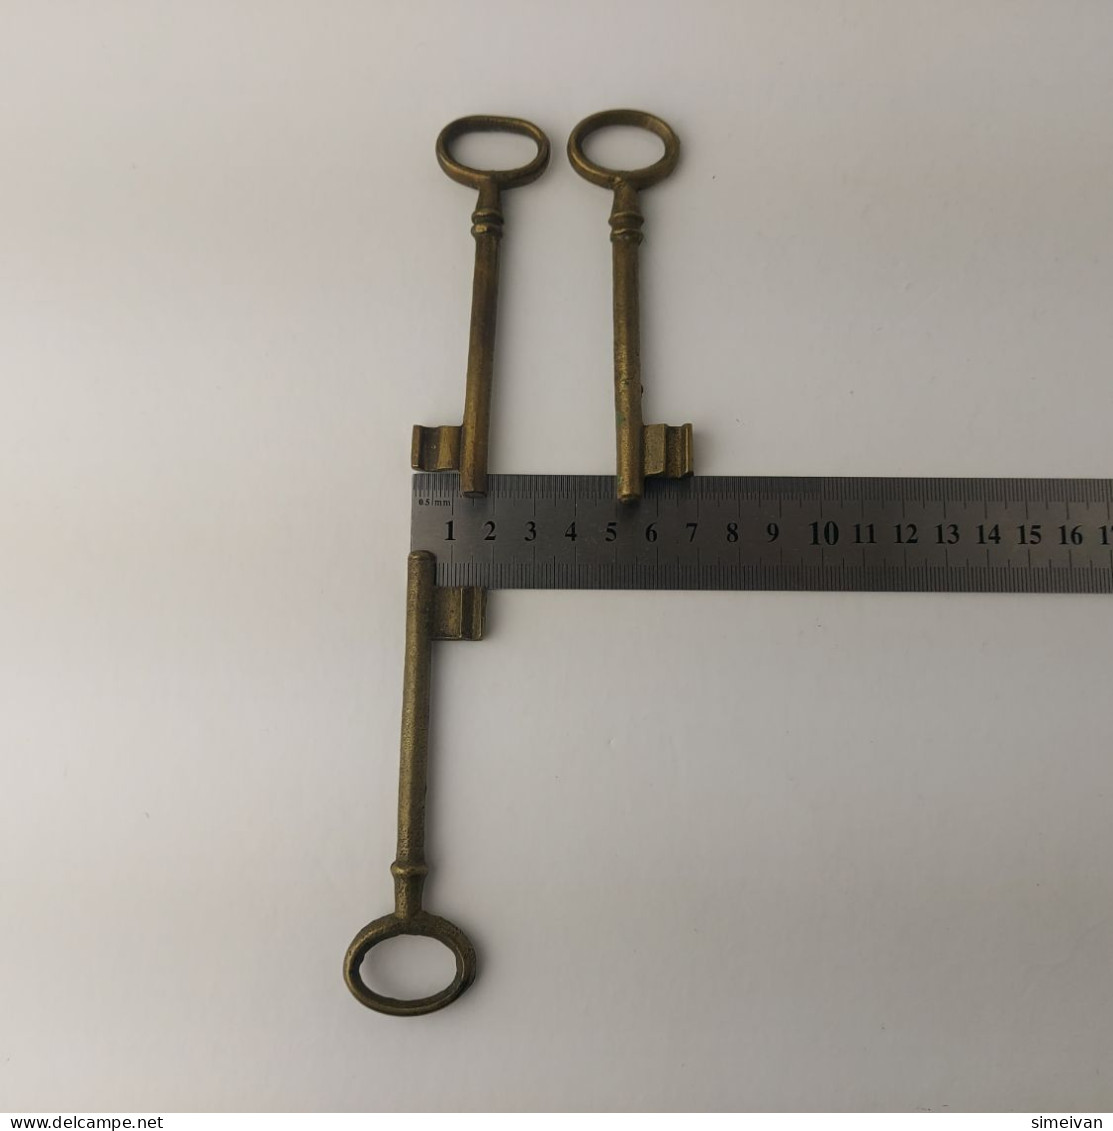 Vintage Lot of 3 Different Brass Keys Skeleton Keys 10 cm #5548